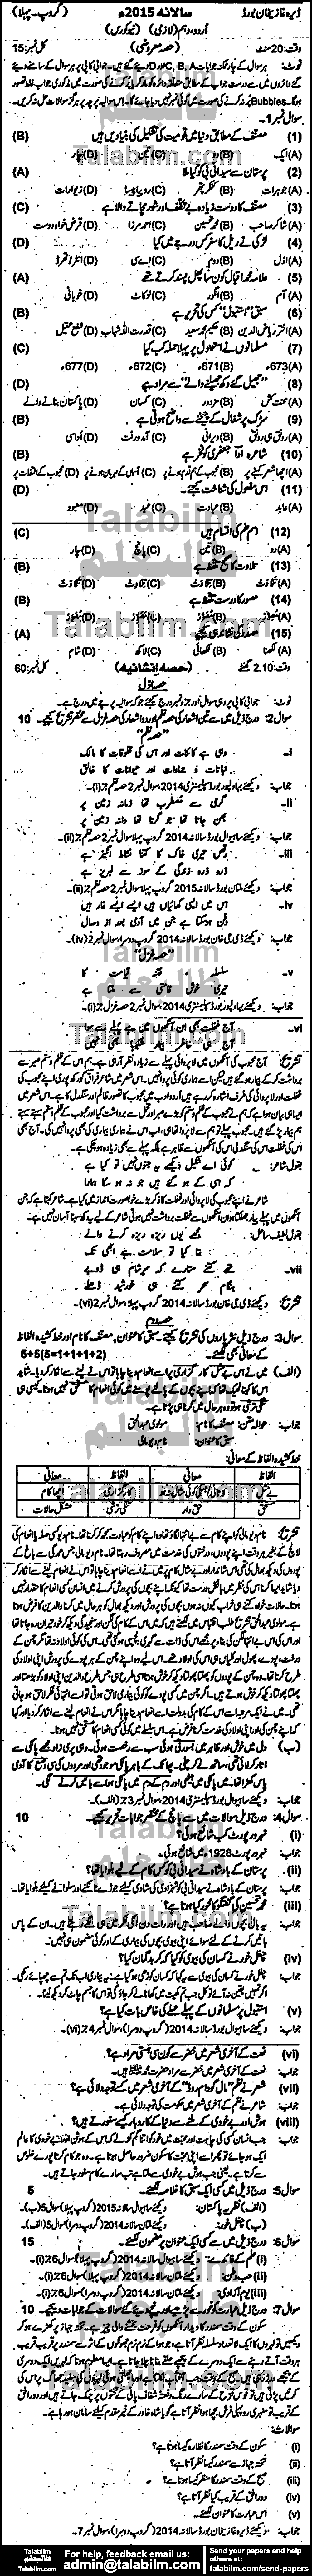 Urdu 0 past paper for Urdu Medium 2015 Group-I